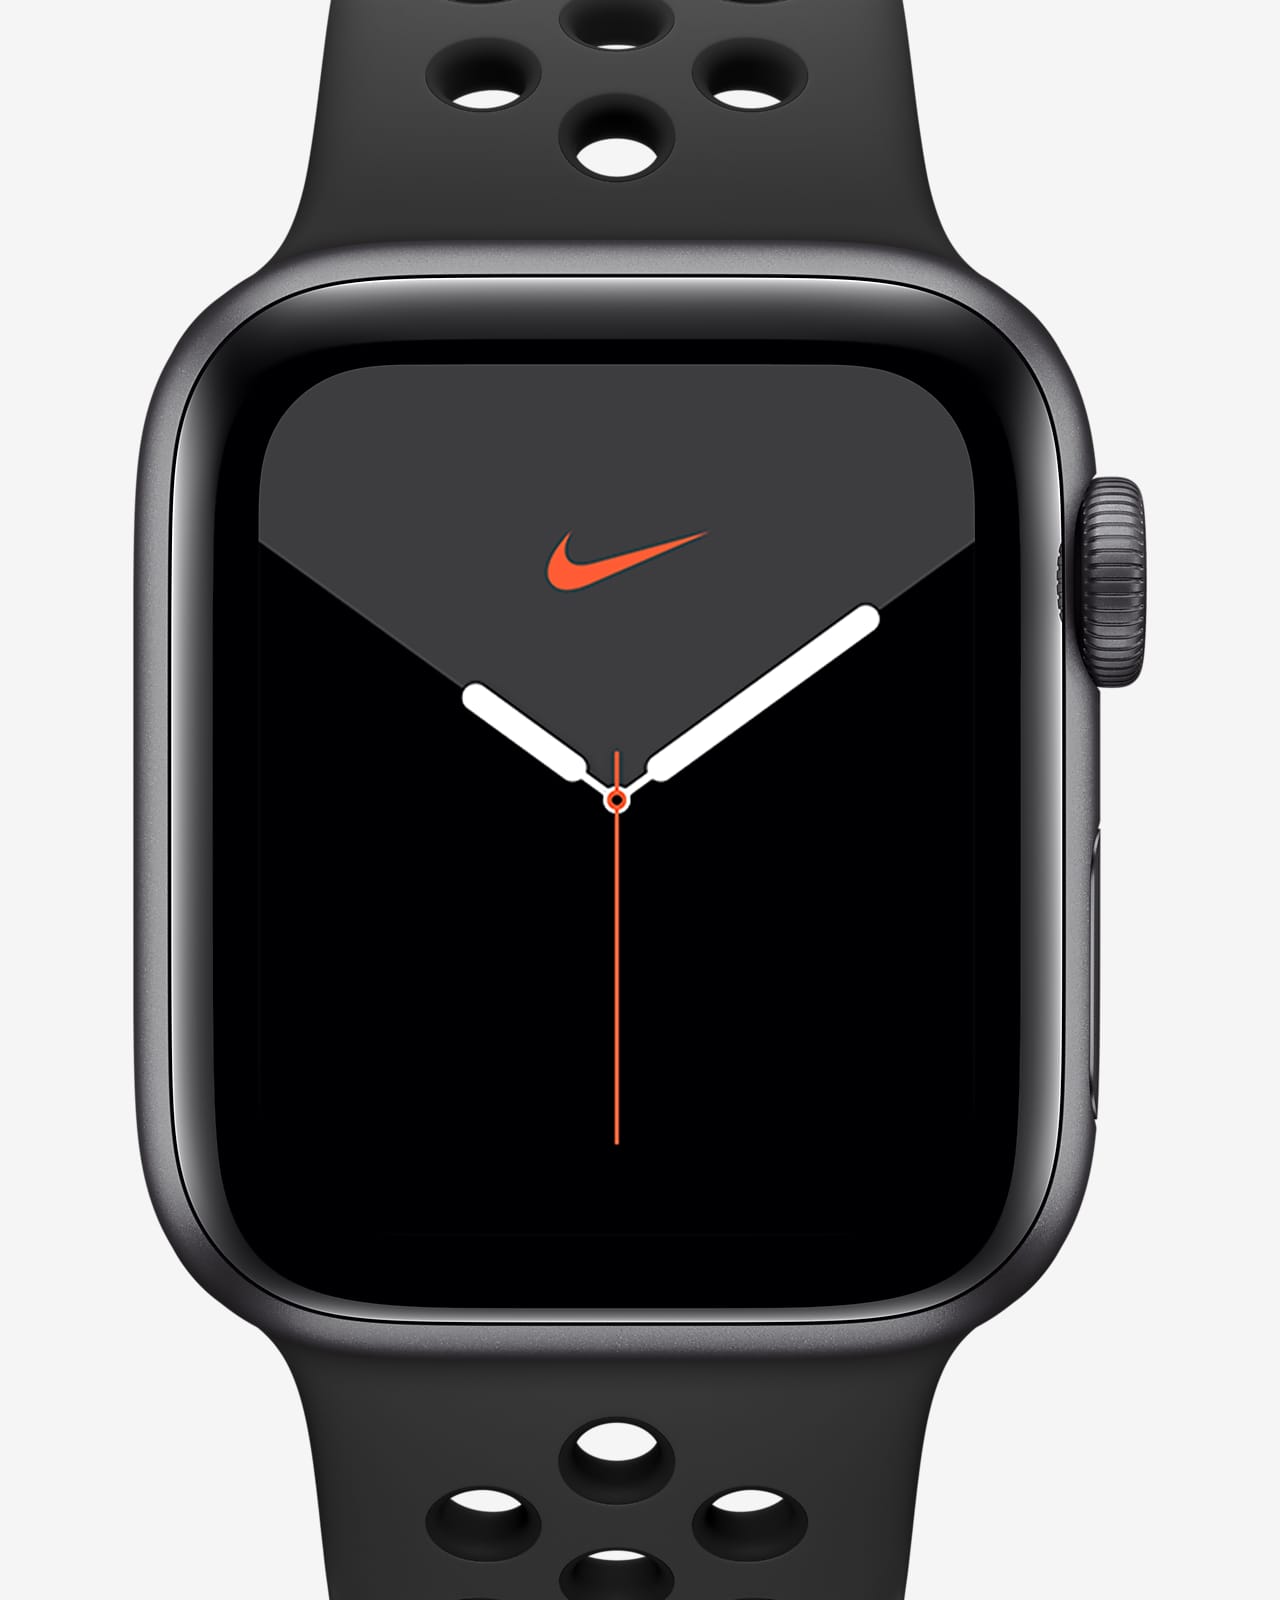 Apple Watch Fitness Wearables - Apple Watch Ultra & More - JB Hi-Fi